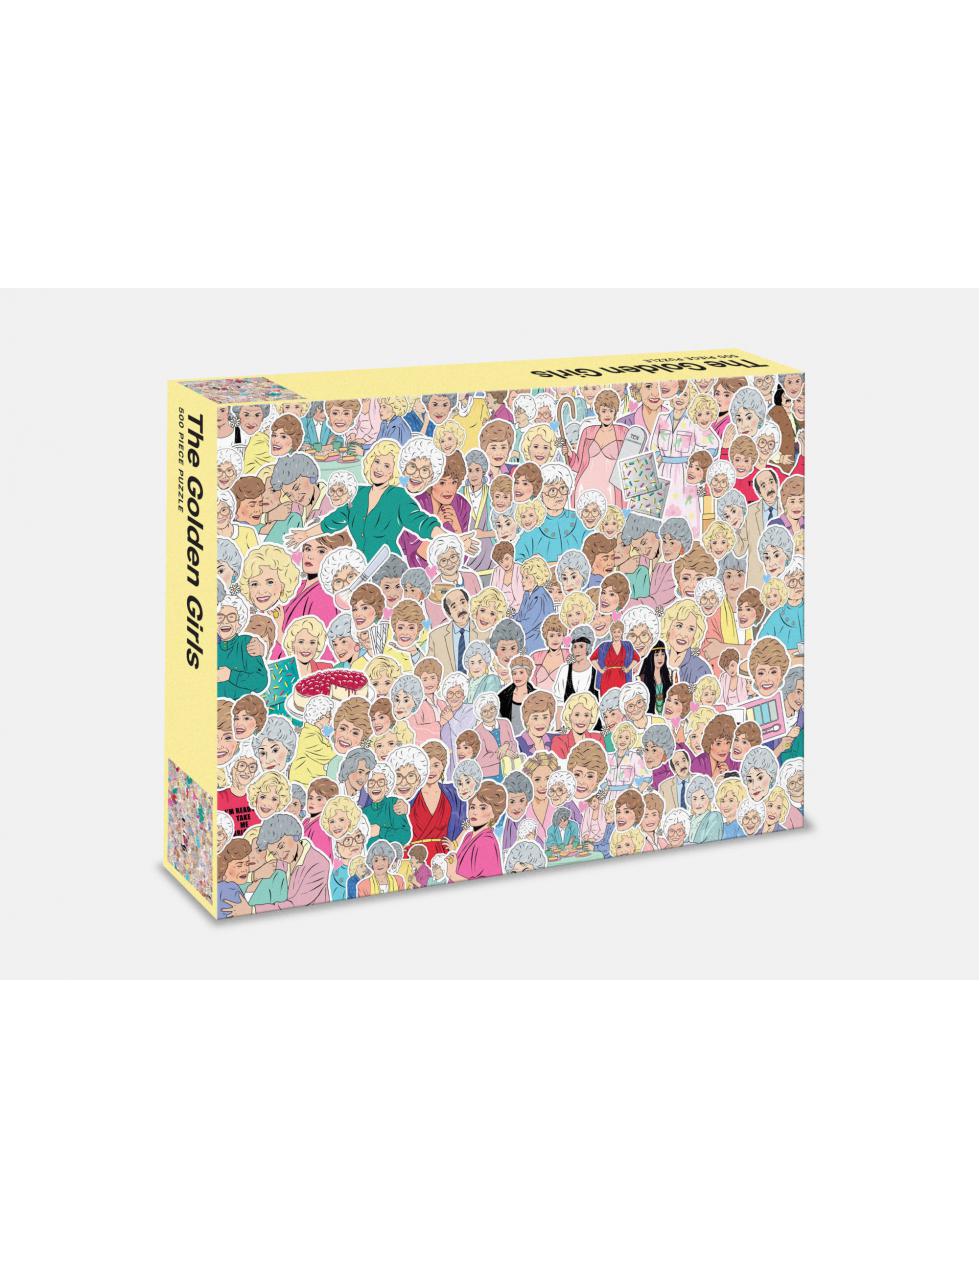 Puzzle pour adulte 500 pièces 52x36,5 cm illustration Girl Gang